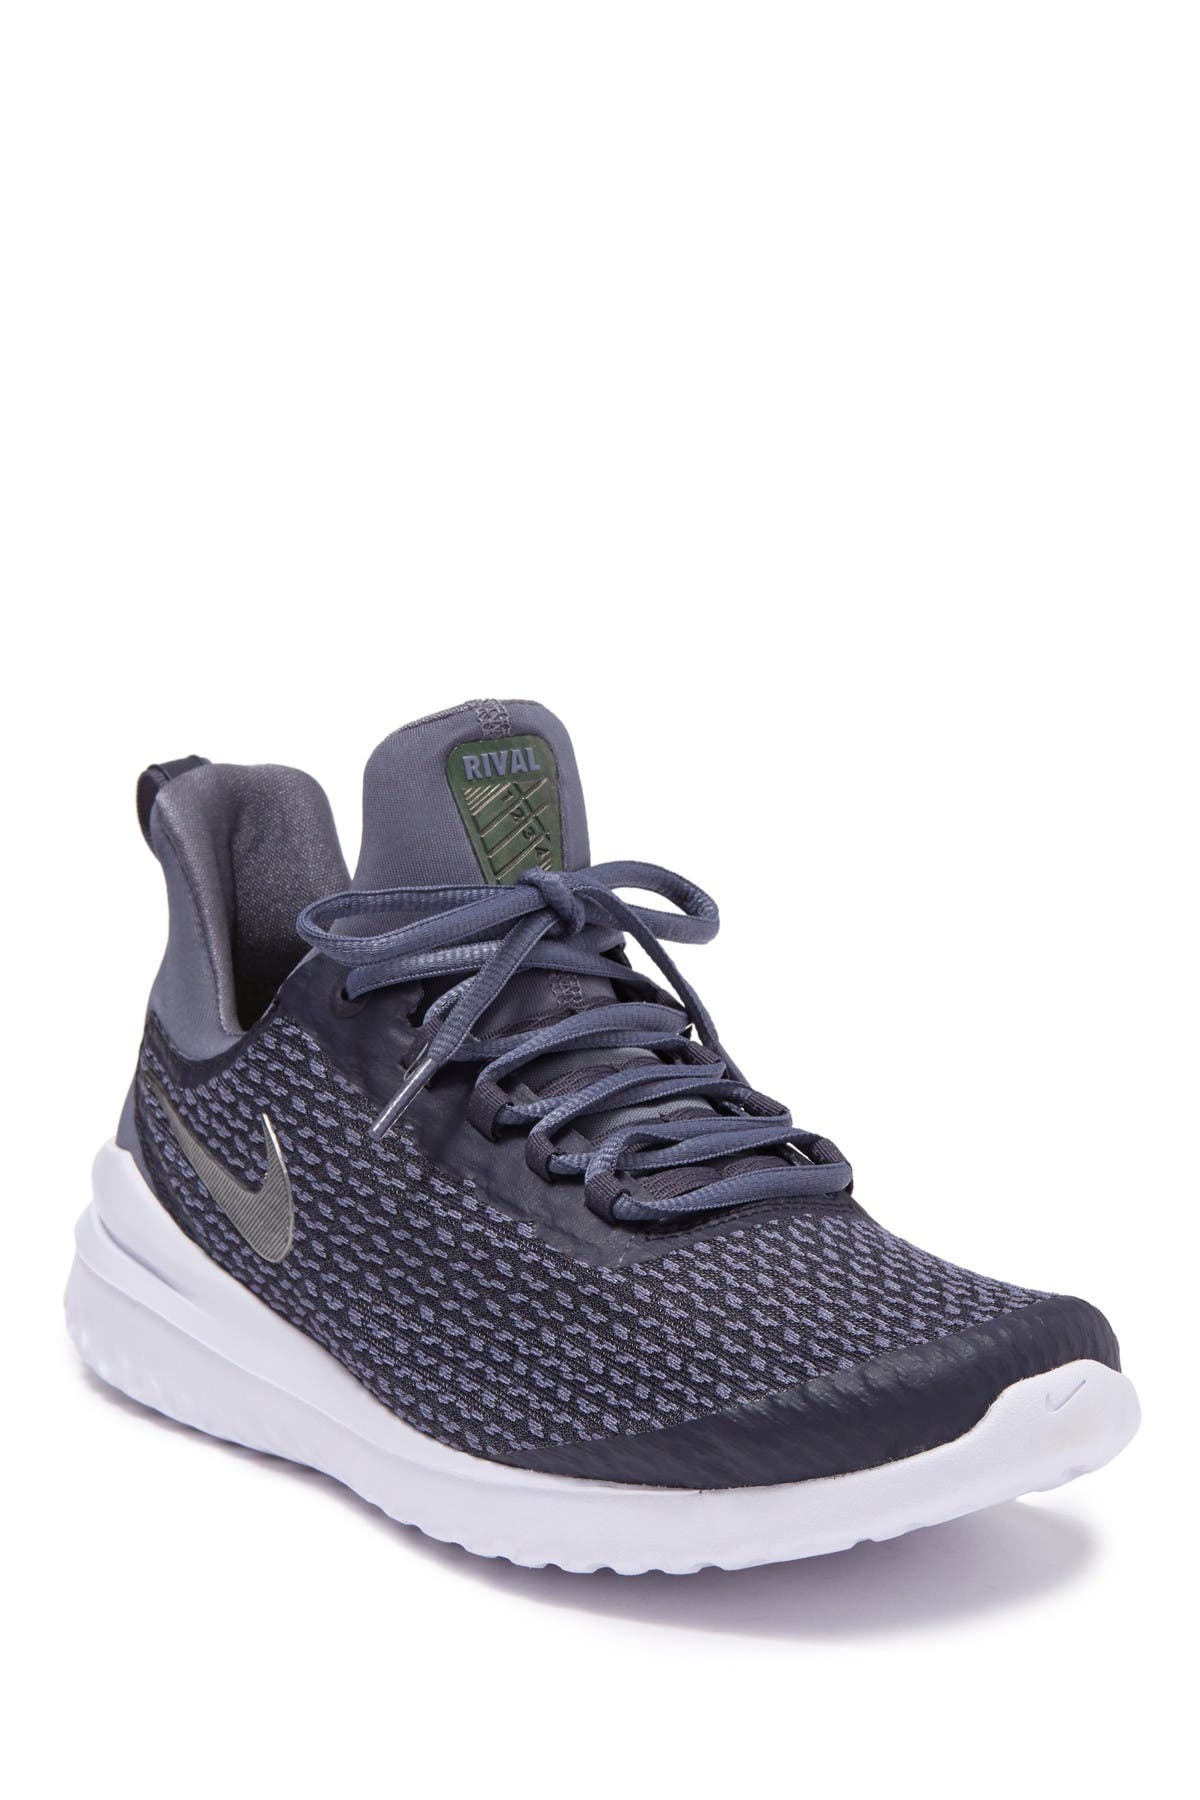 Nike | Renew Rival Running Shoe 